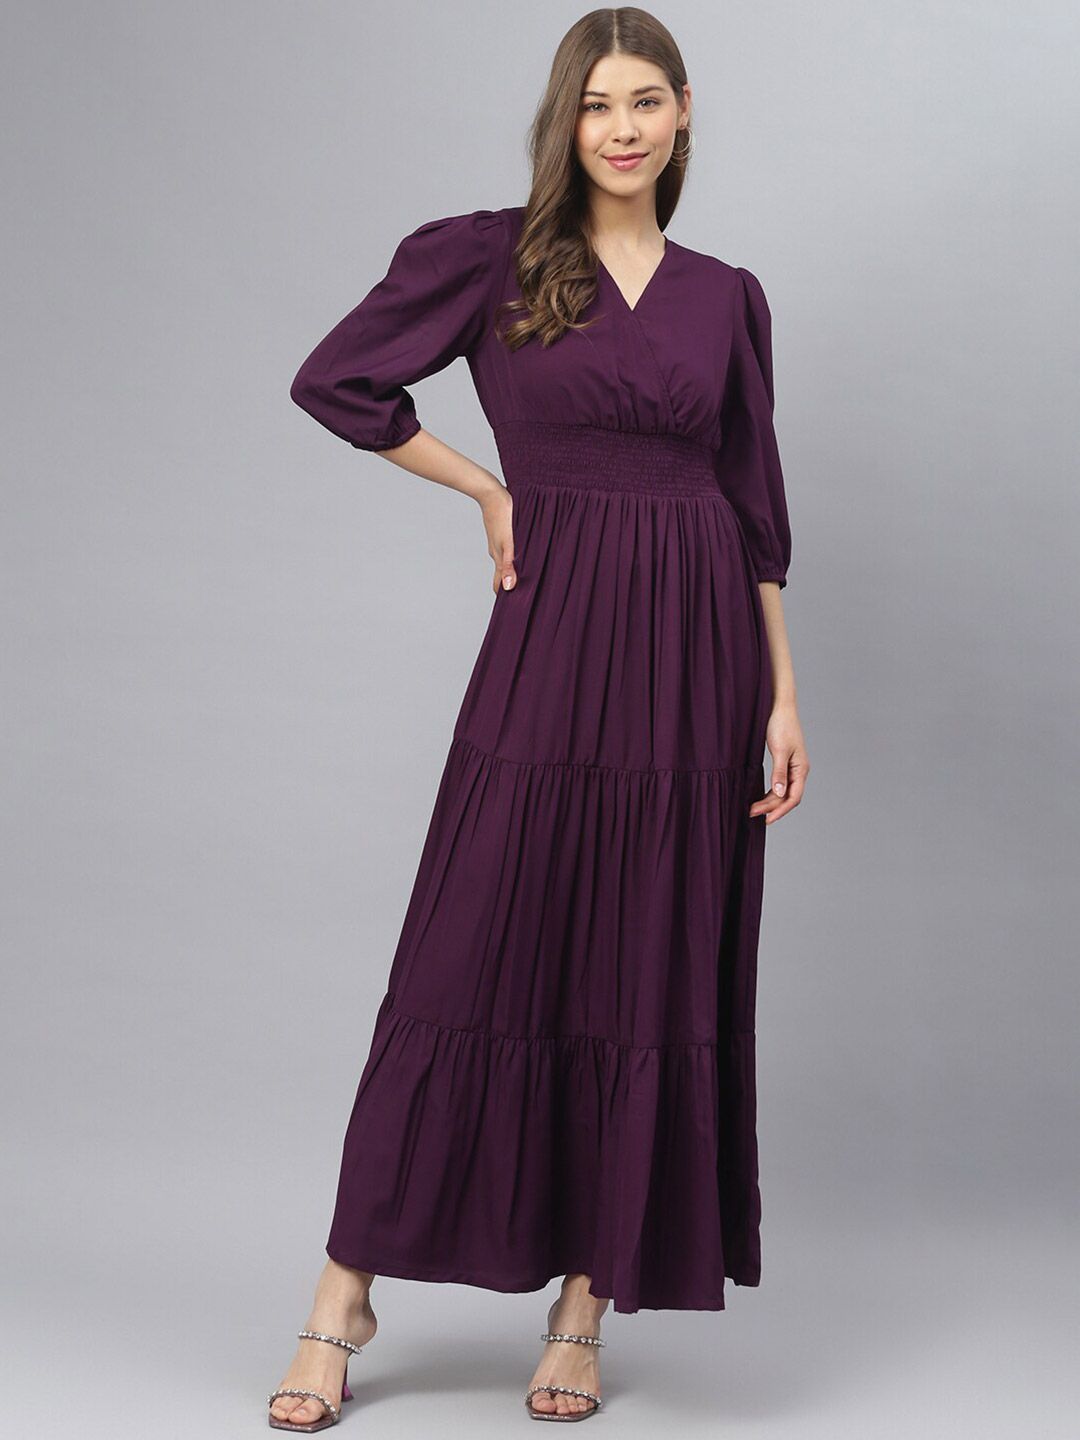 DEEBACO Purple Maxi Tiered Dress Price in India